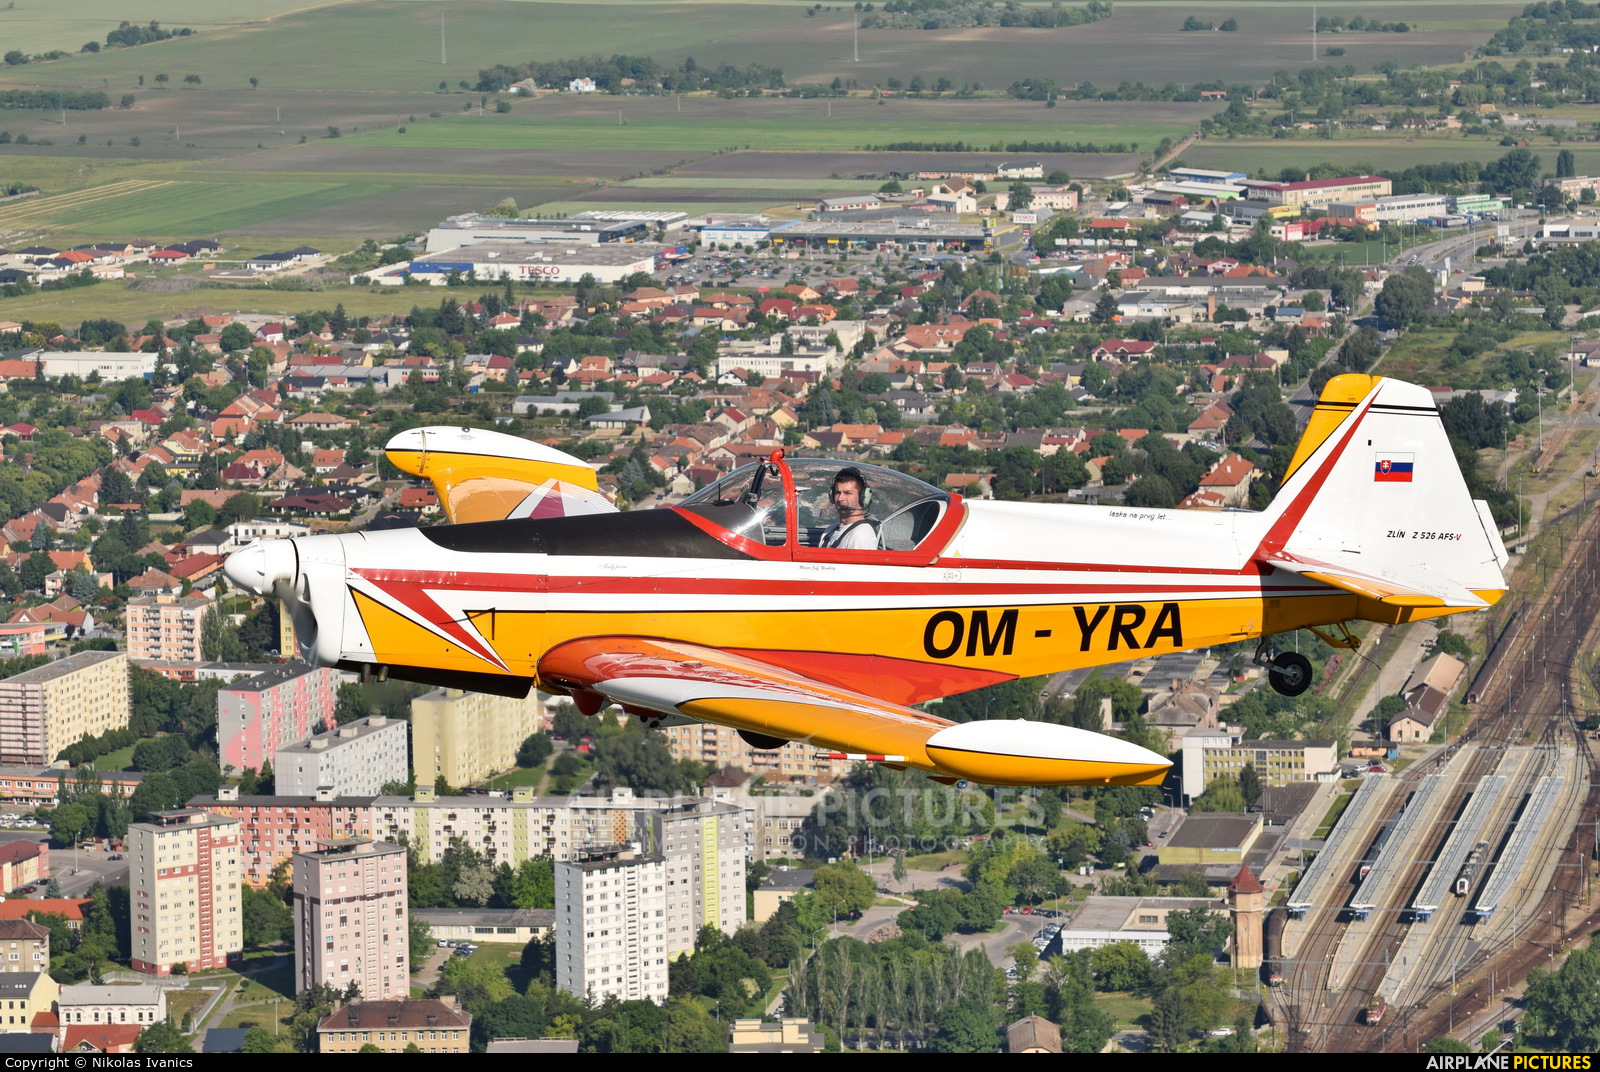 Aeroklub Trnava OM-YRA aircraft at In Flight - Slovakia